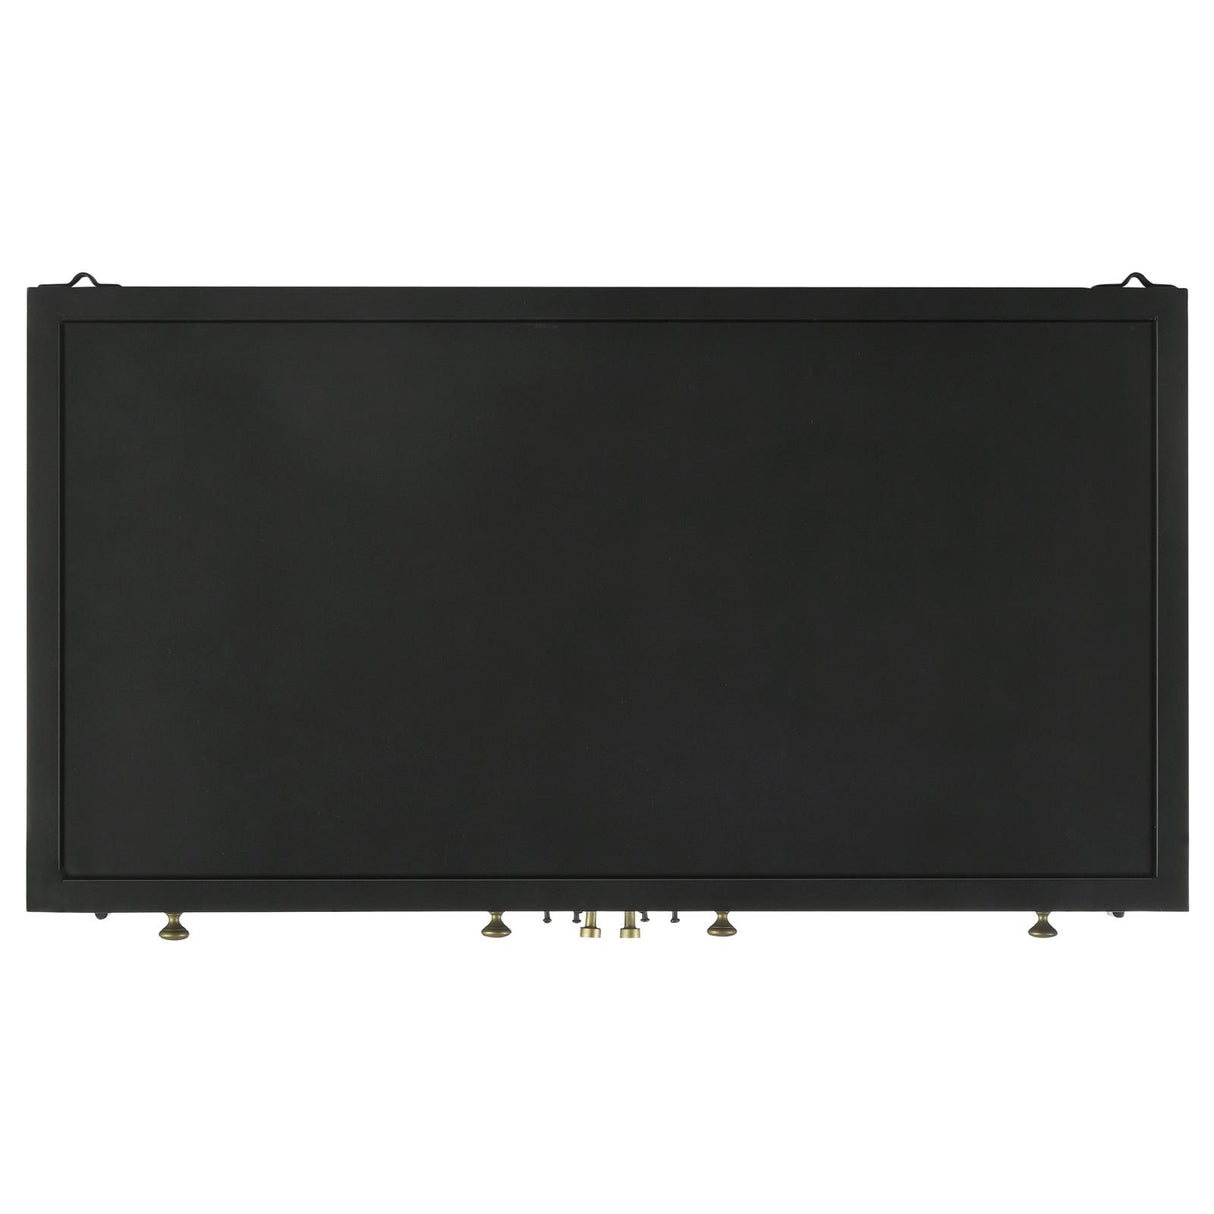 Sadler 2-drawer Accent Cabinet with Glass Doors Black - 951761 - Luna Furniture